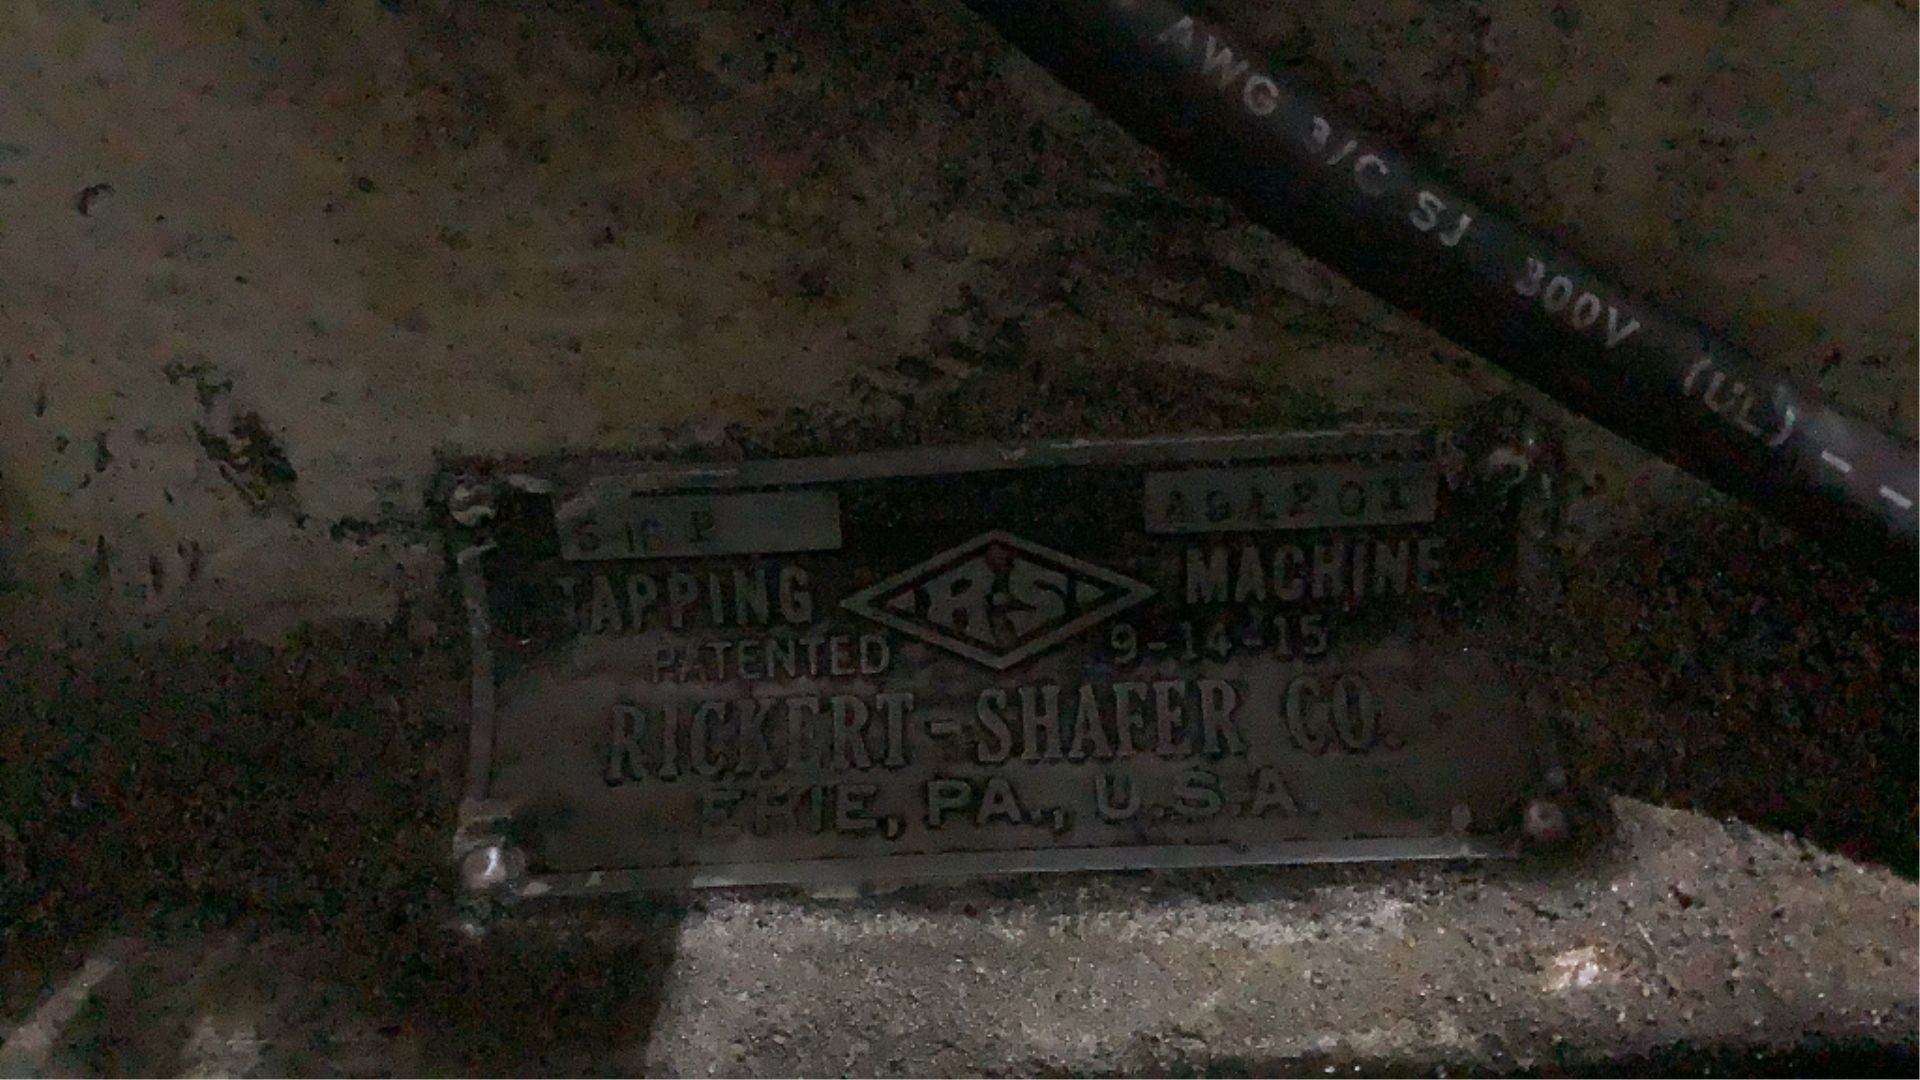 Rickert-Shafer Tapping Machine- - Image 14 of 14